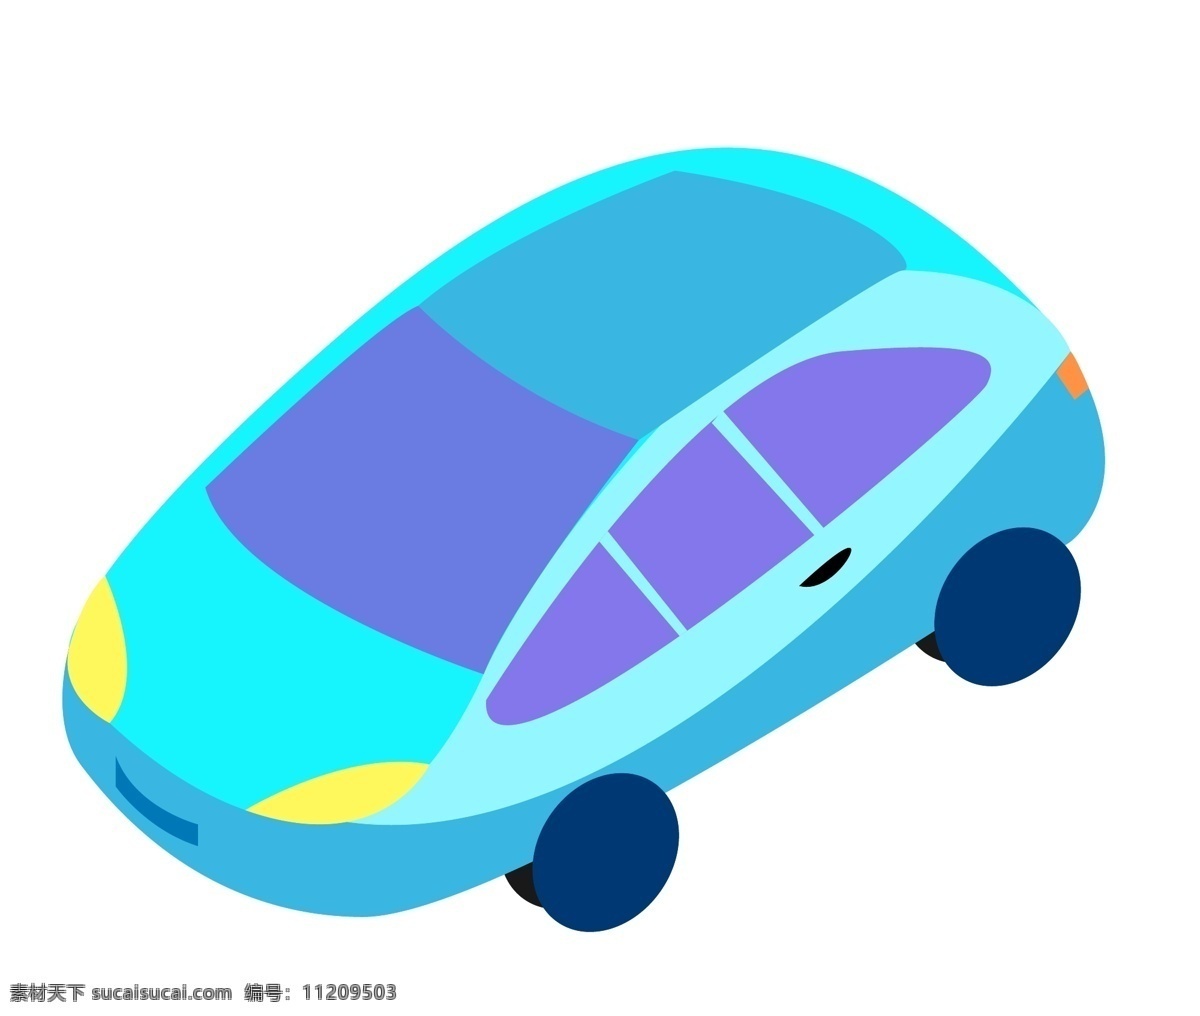 蓝色 汽车装饰 插画 蓝色的汽车 漂亮的汽车 汽车插画 立体汽车 卡通汽车 交通工具